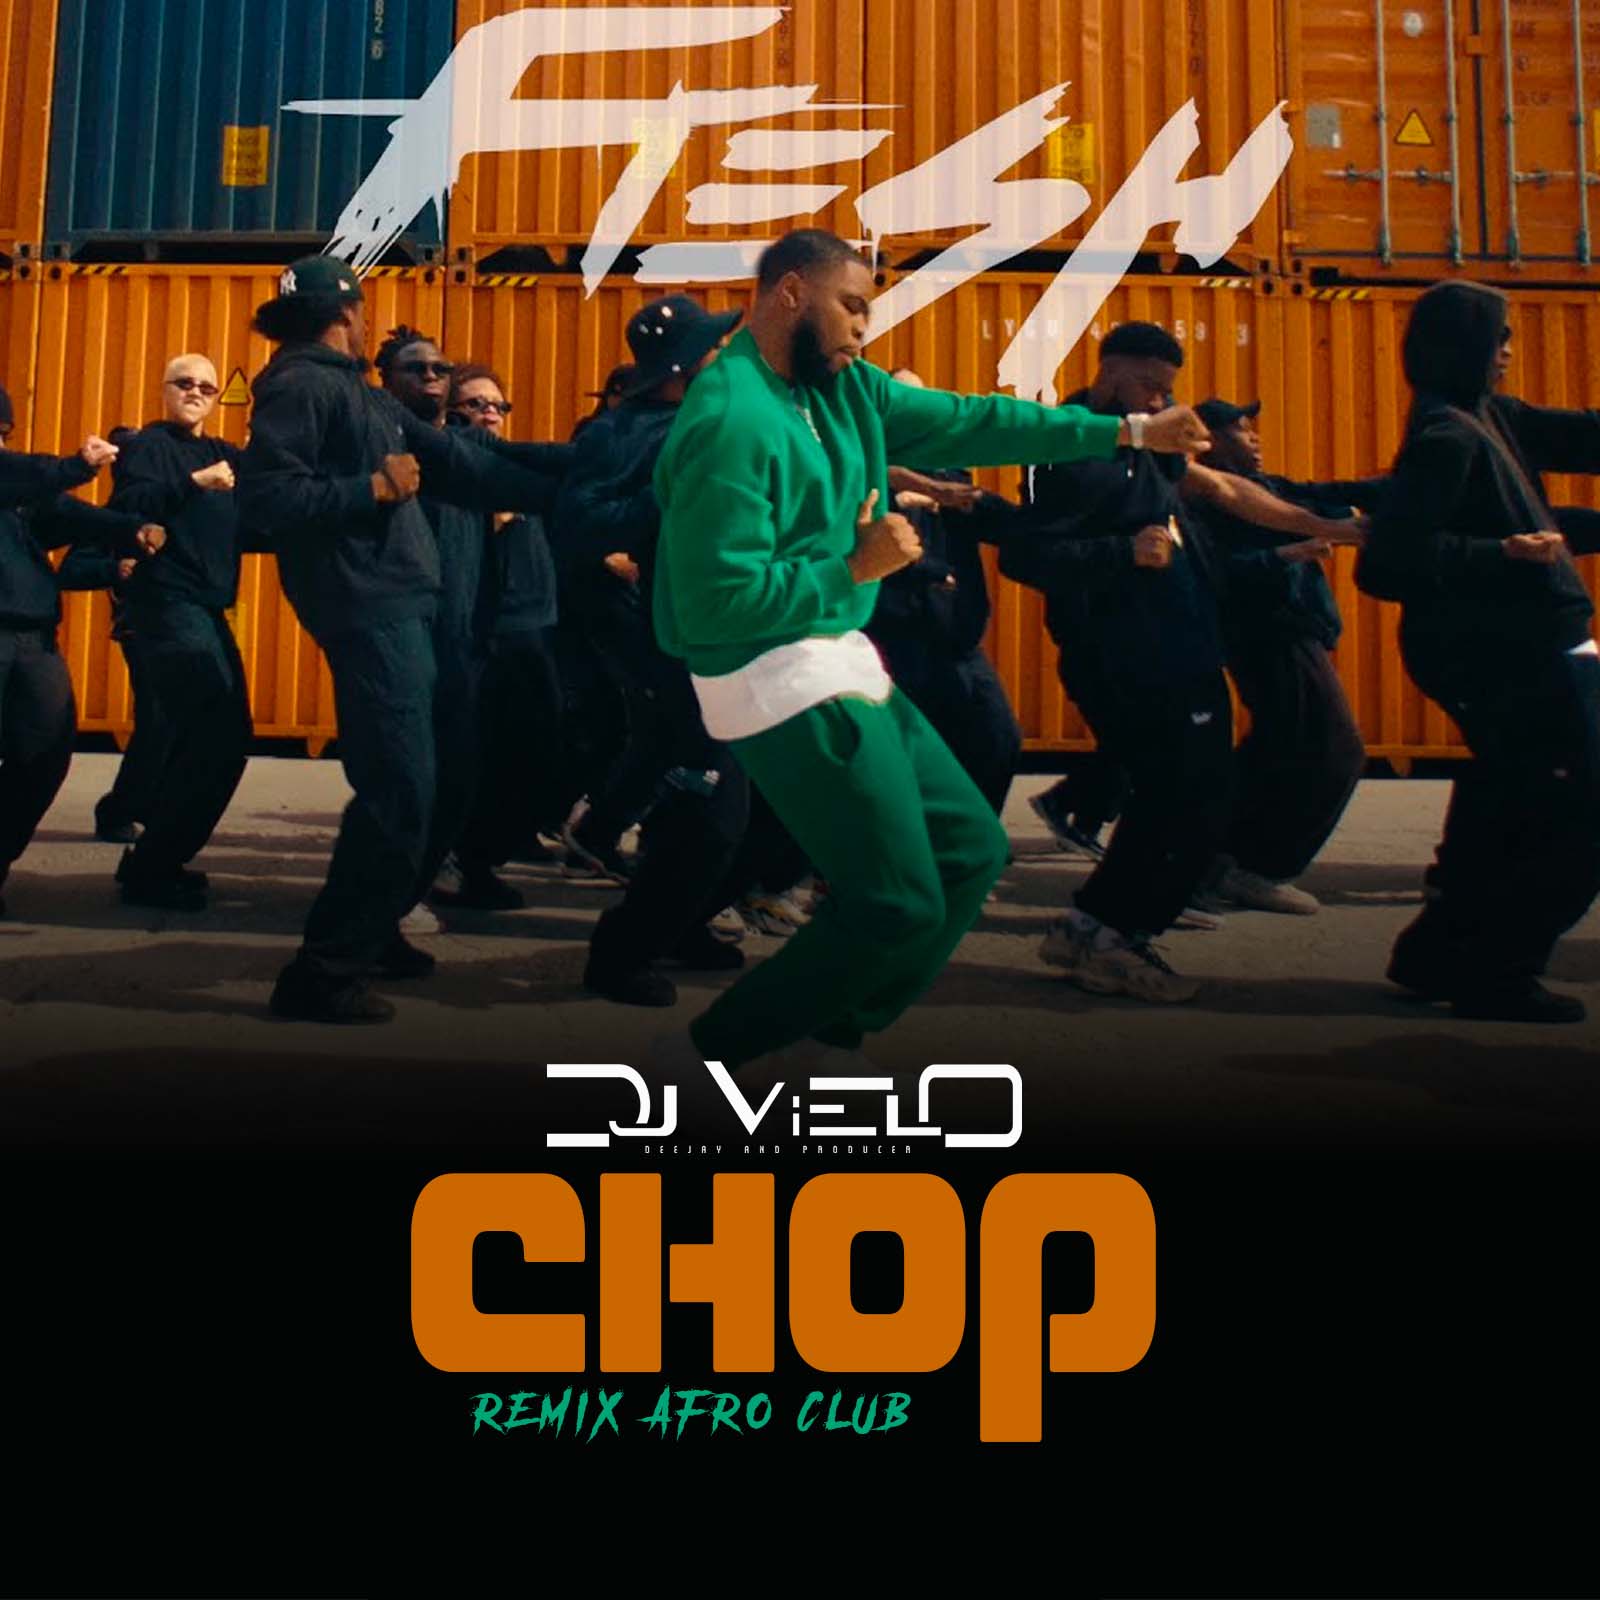 Download Dj Vielo X Fresh - Chop Remix Afro Club DISPO SUR SPOTIFY, DEEZER, APPLE MUSIC